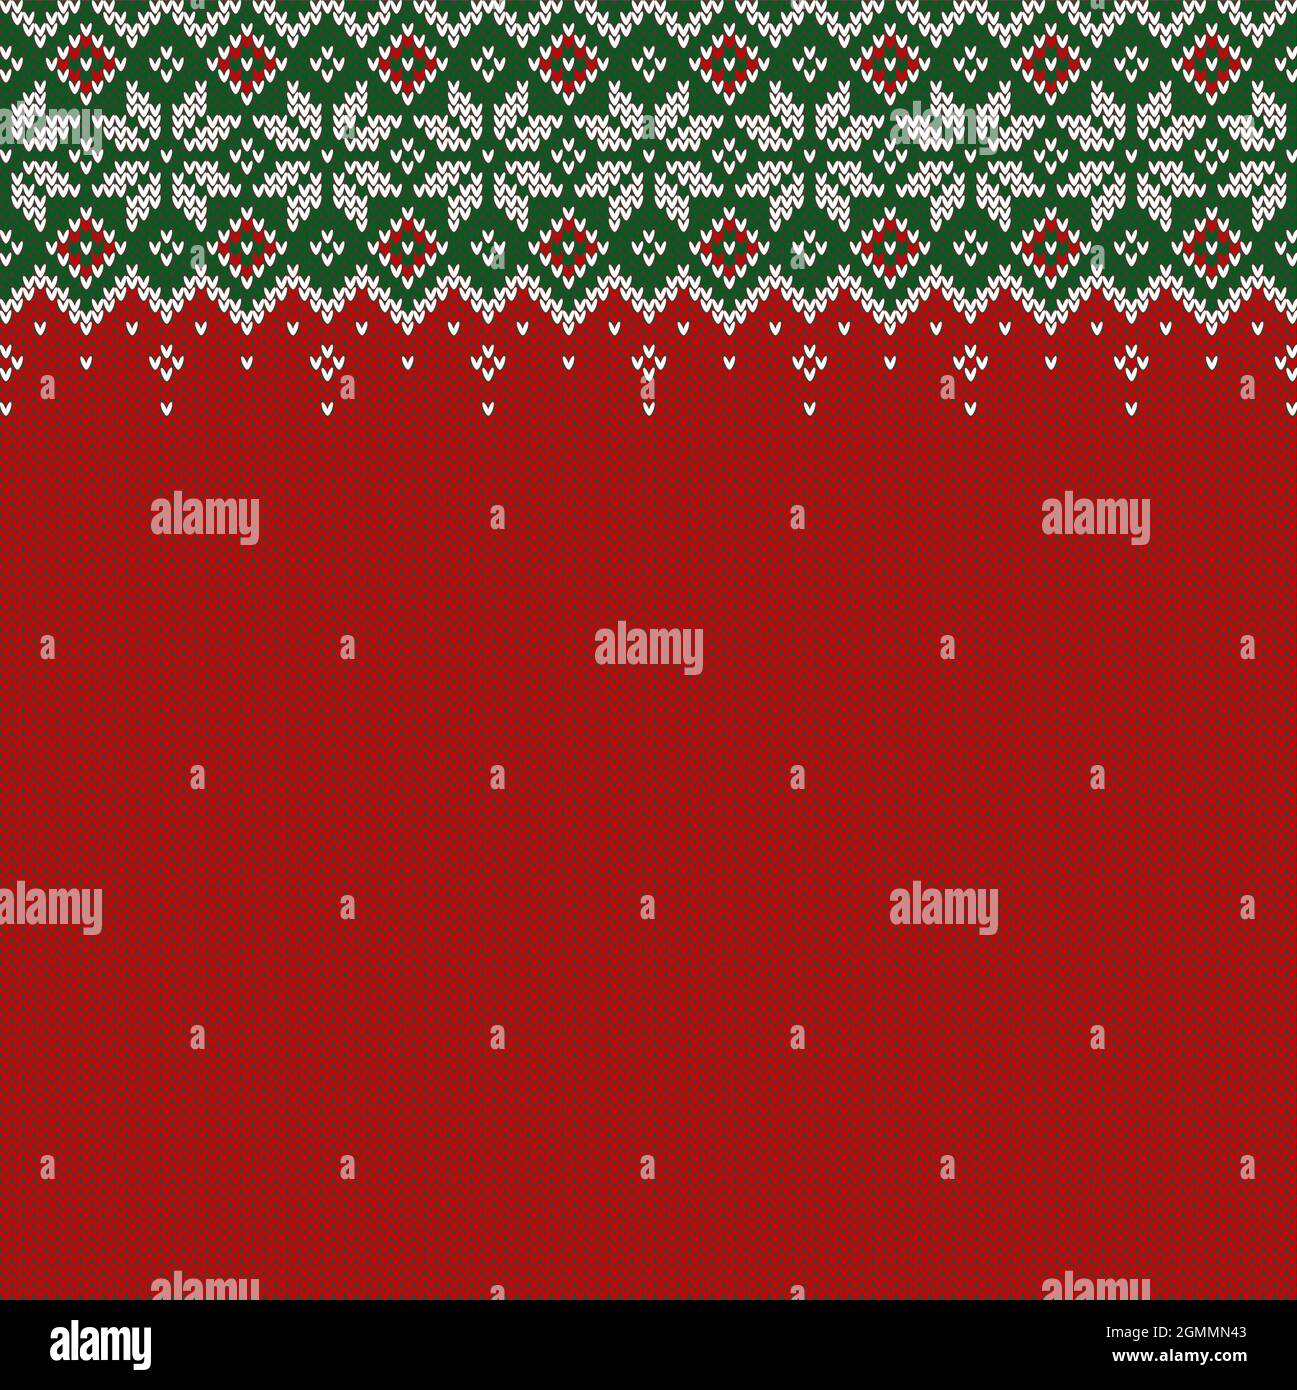 Gestrickter Hintergrund mit Copyspace. Rote, grüne und weiße Pullovermuster für Weihnachten, Neujahr oder Winter. Traditionelles skandinavisches Ornament. Stock Vektor